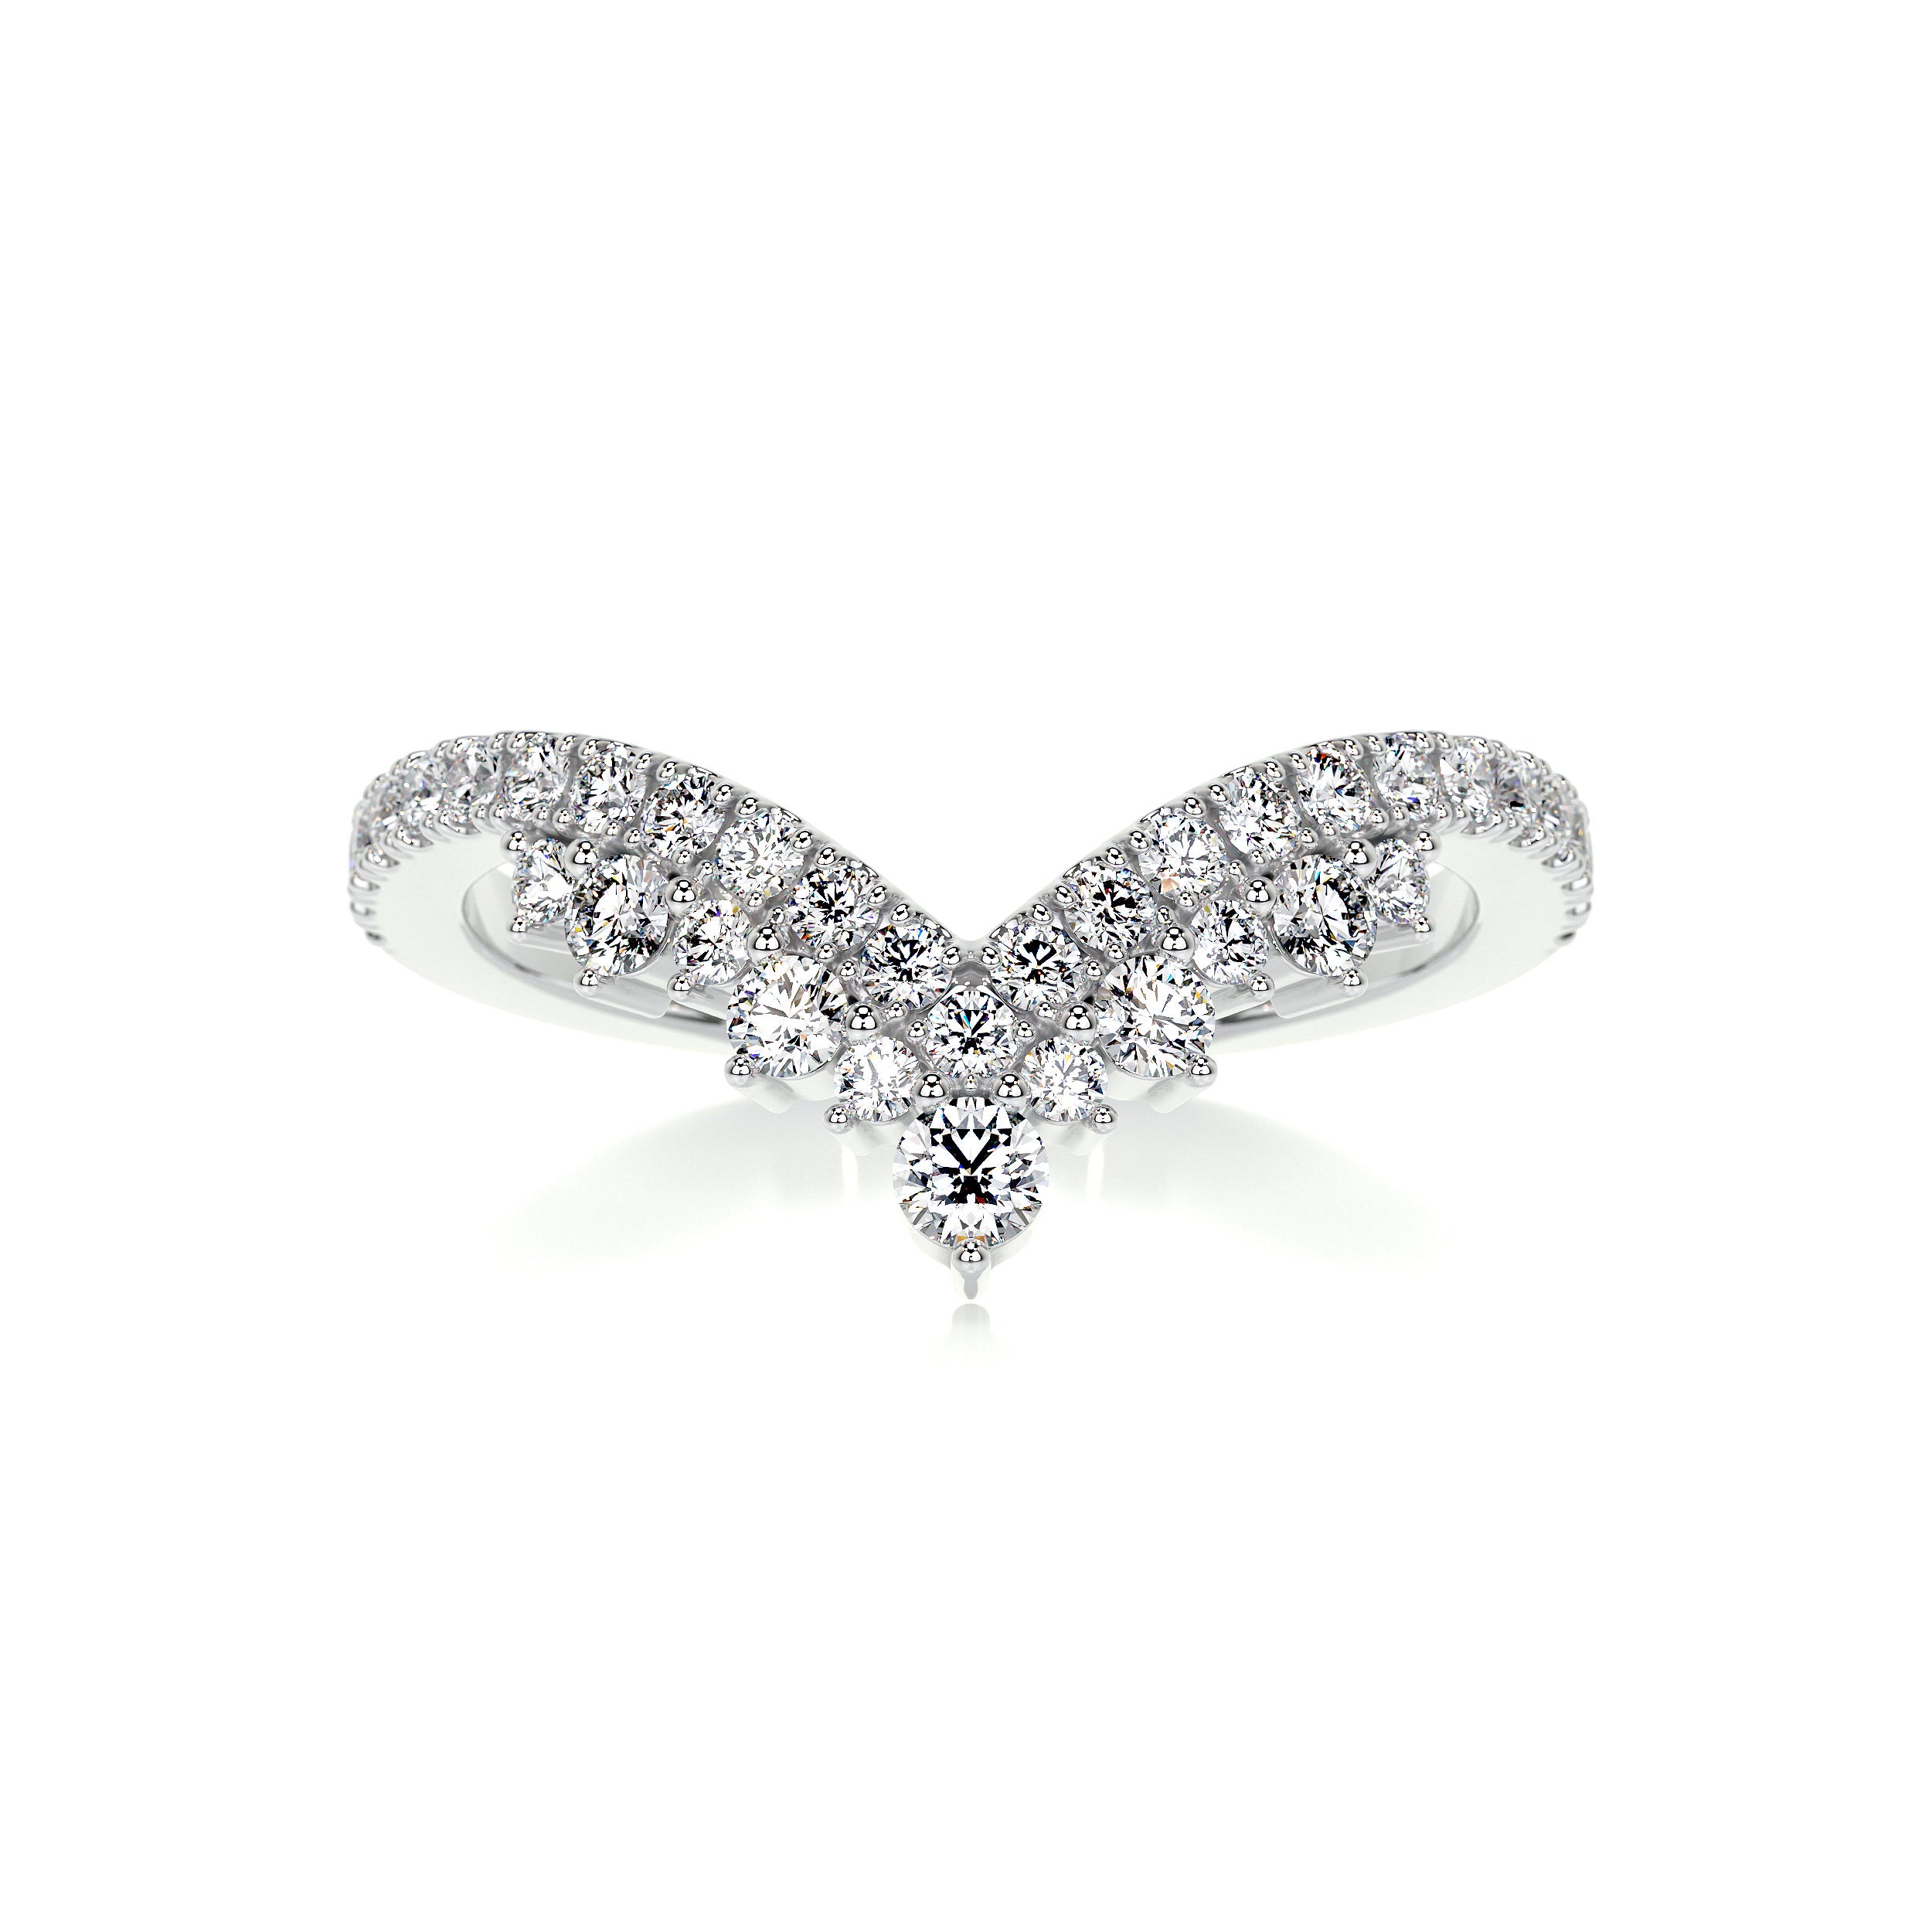 Mia Diamond Wedding Ring   (0.50 Carat) -14K White Gold